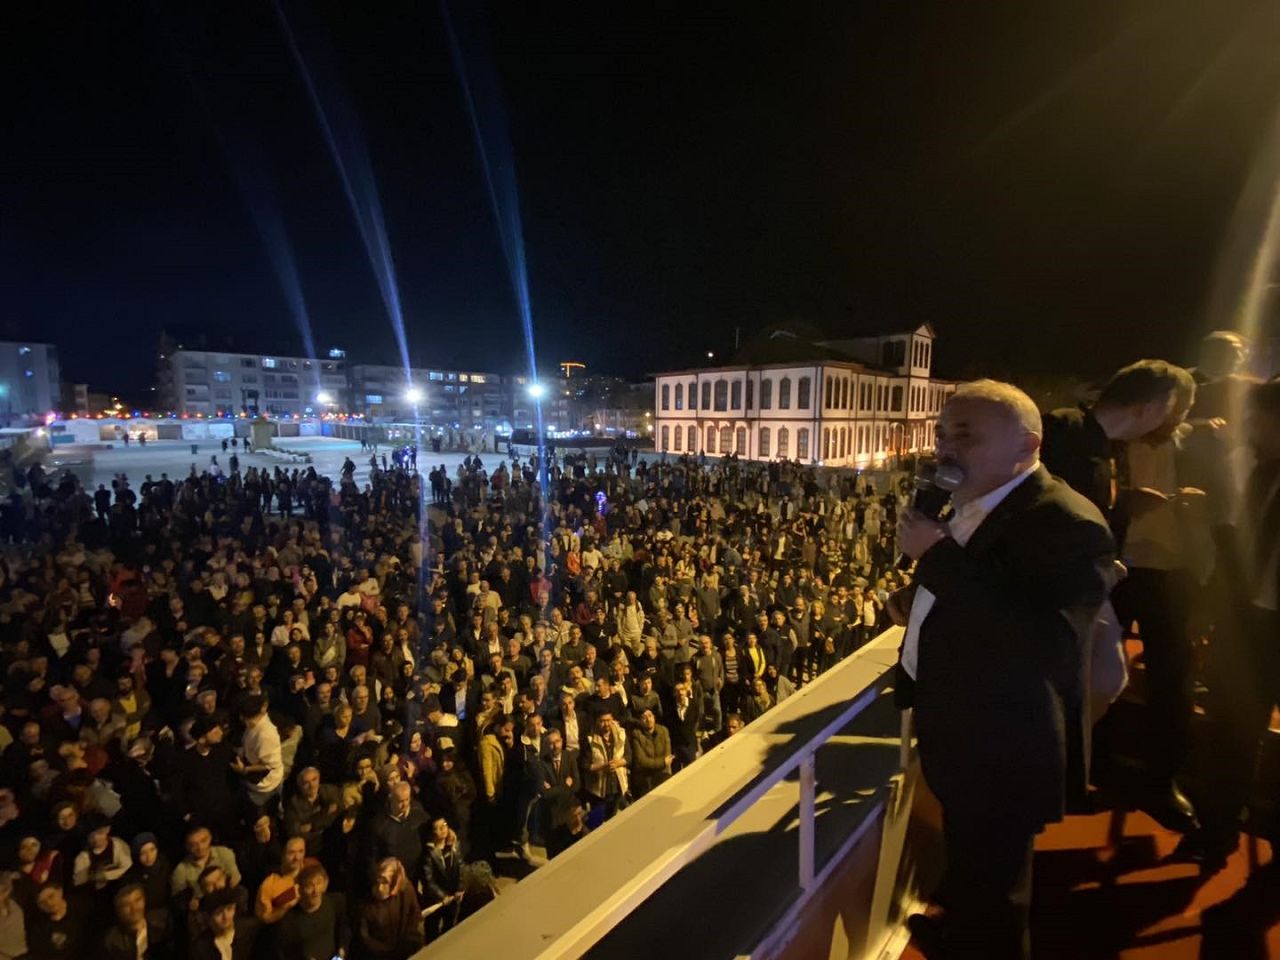 Çankırı MHP'ye kucak açtı! MHP adayı İsmail Hakkı Esen Belediye Başkanı oldu